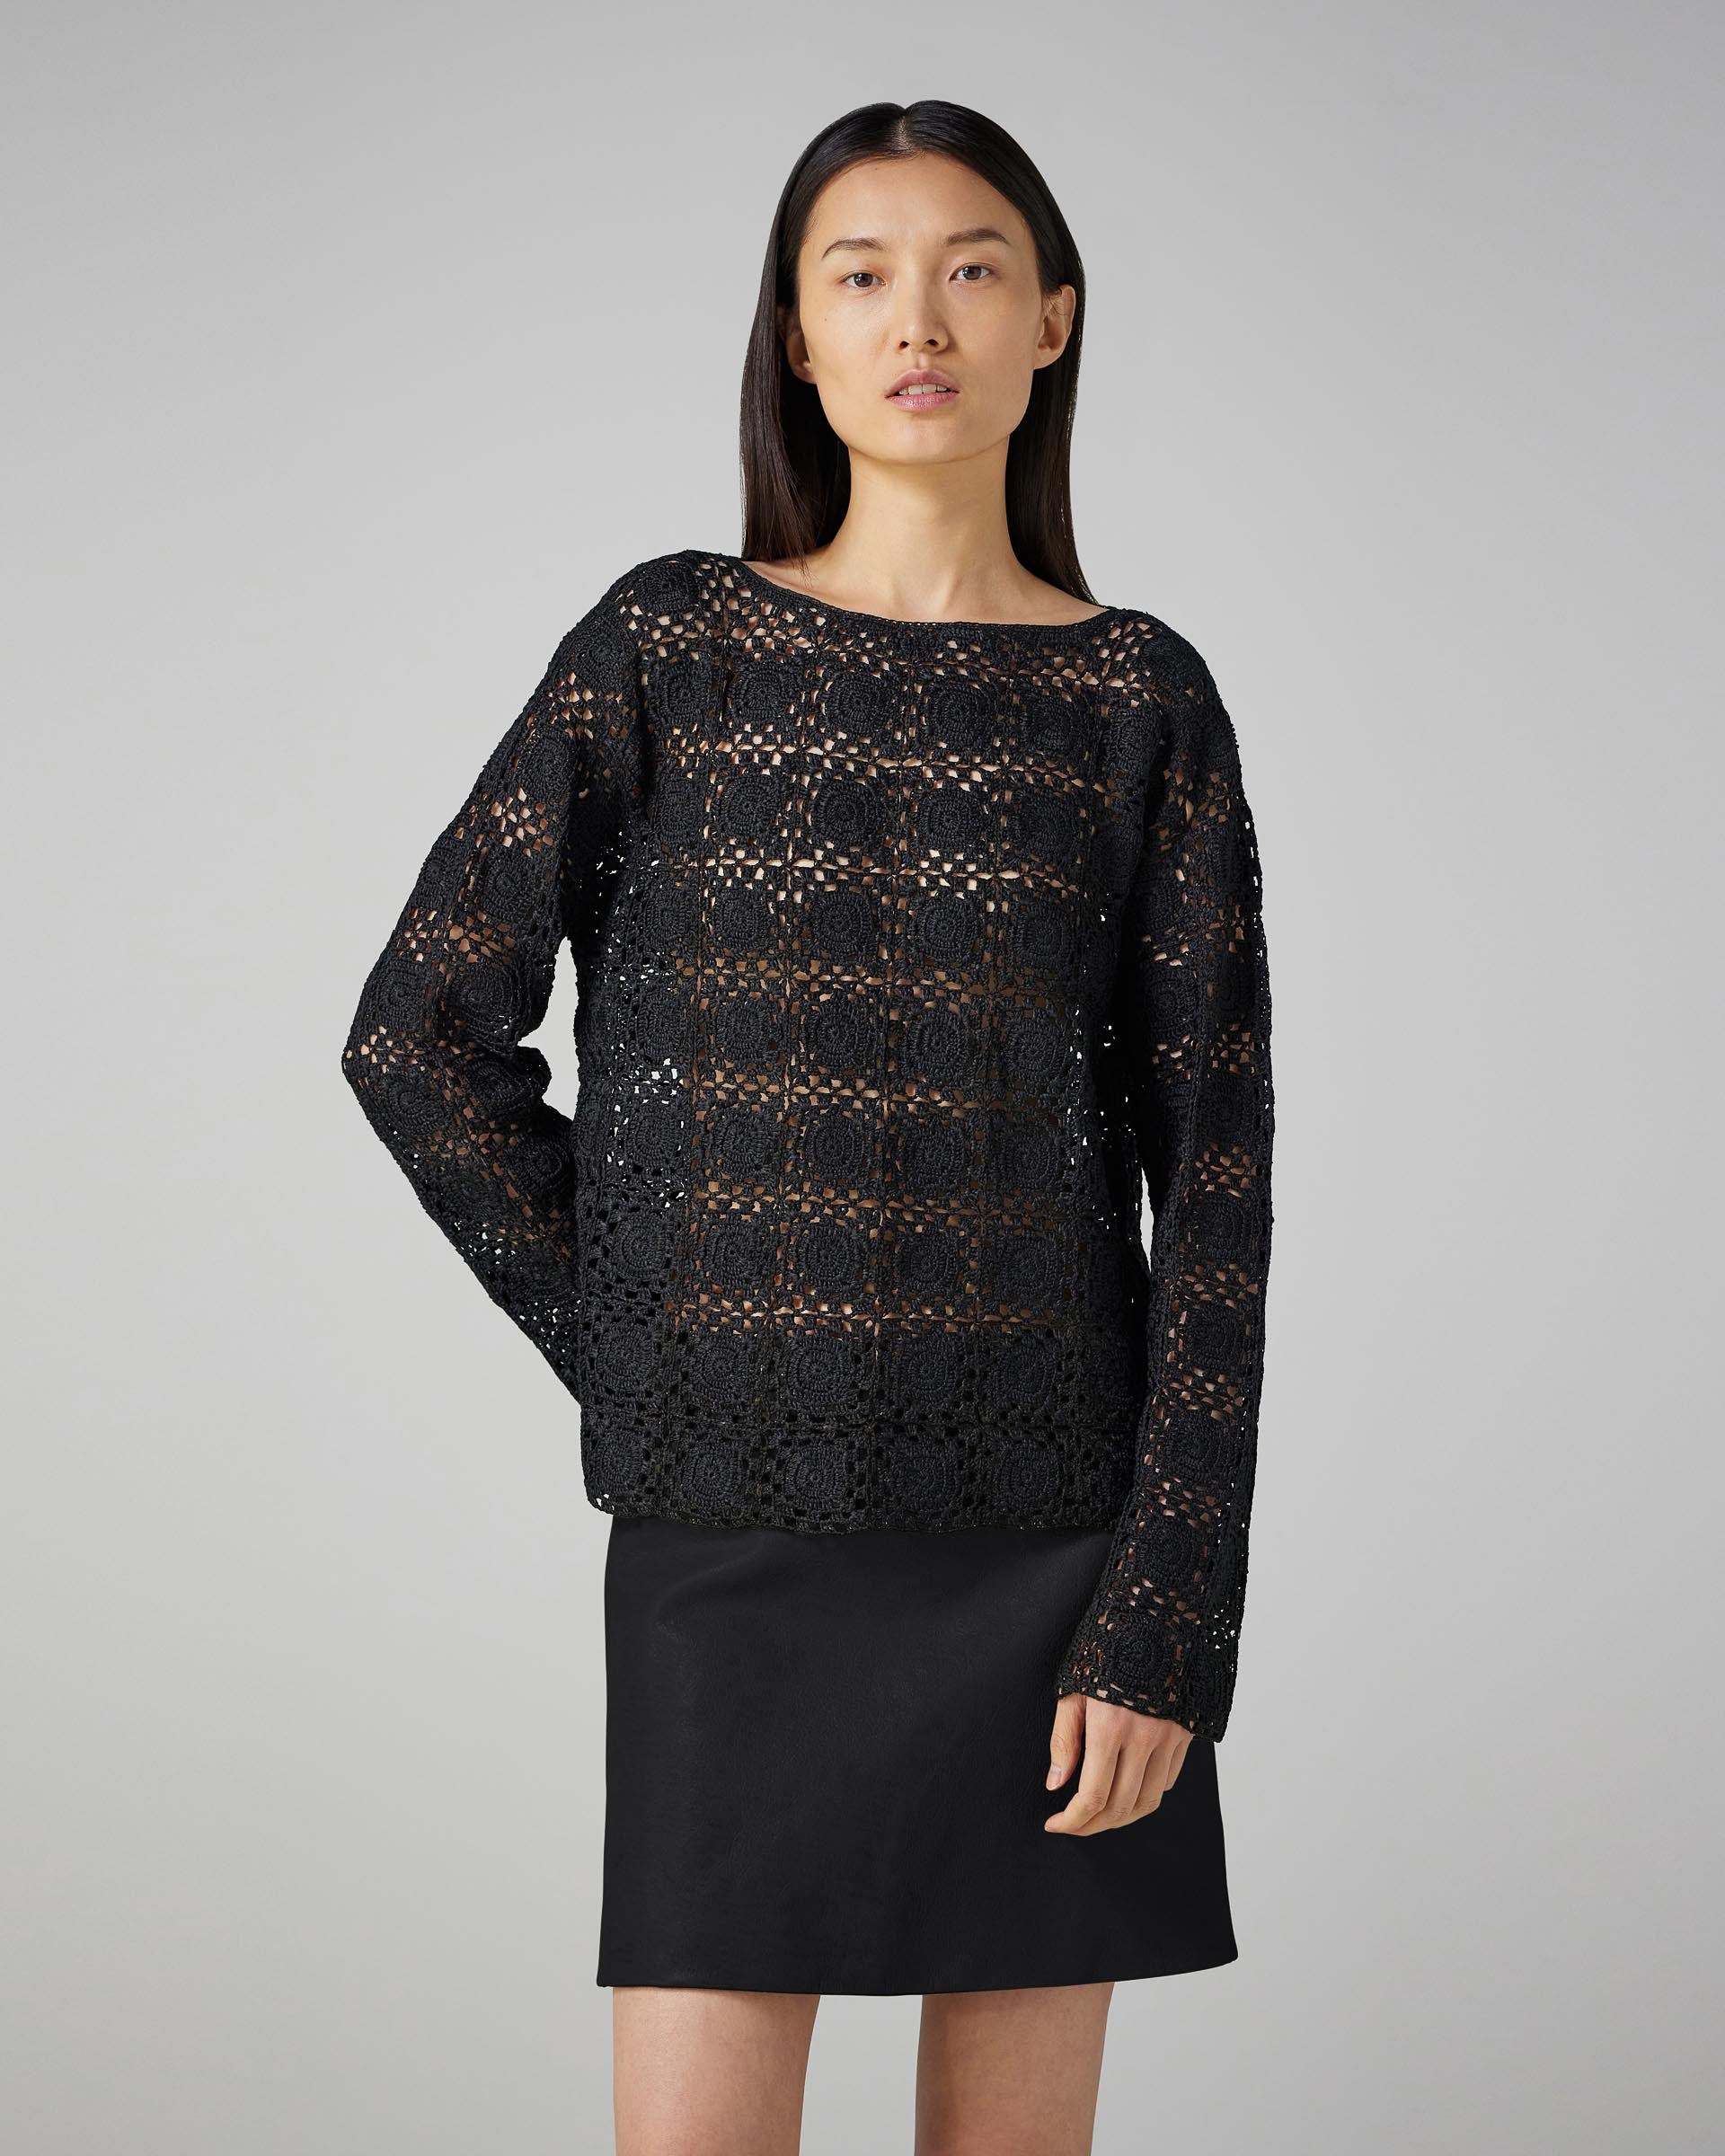 Elodie Crochet Top in Silk, Black